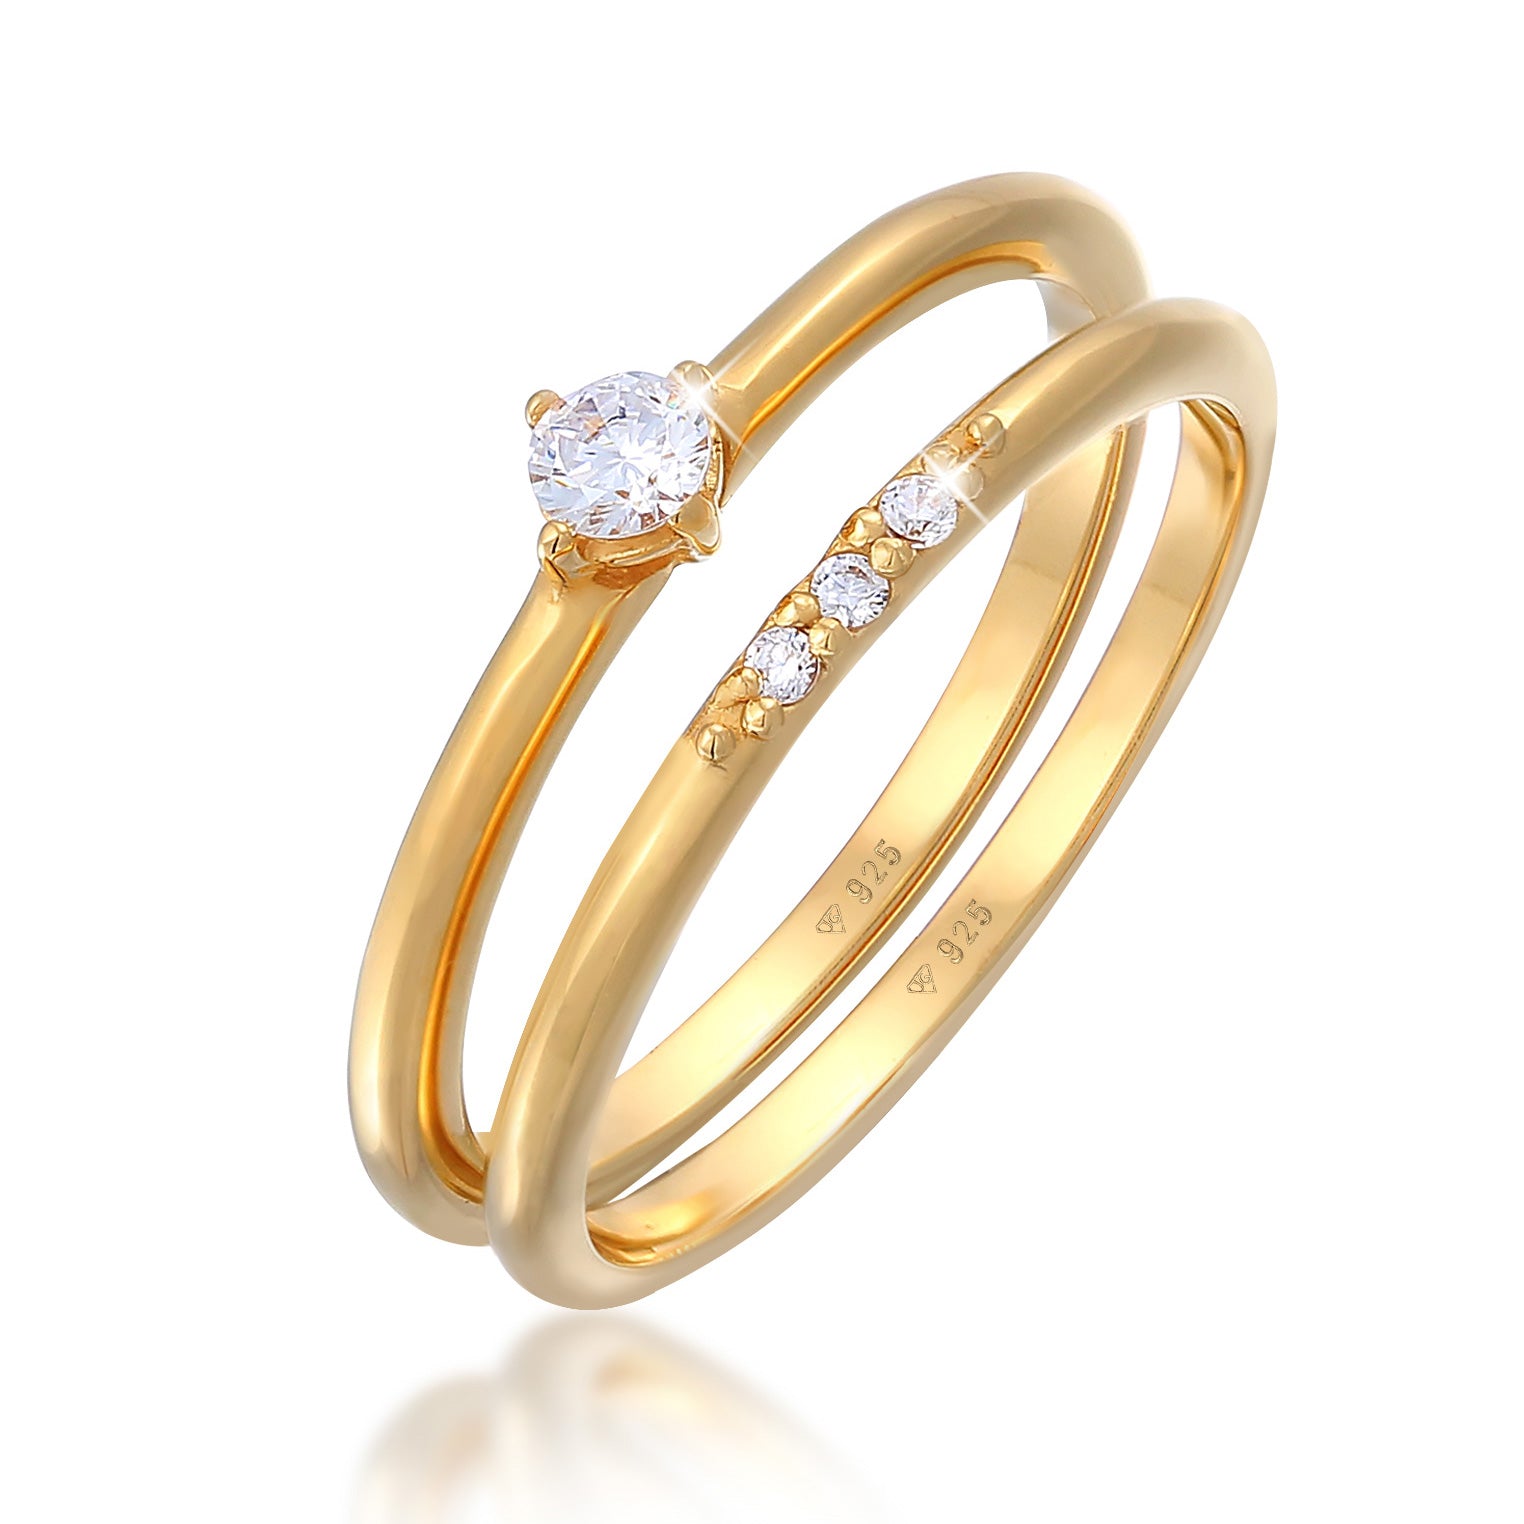 Ringe aus Silber oder Gold | bei Elli kaufen | TOP Auswahl – Seite 7 – Elli  Jewelry